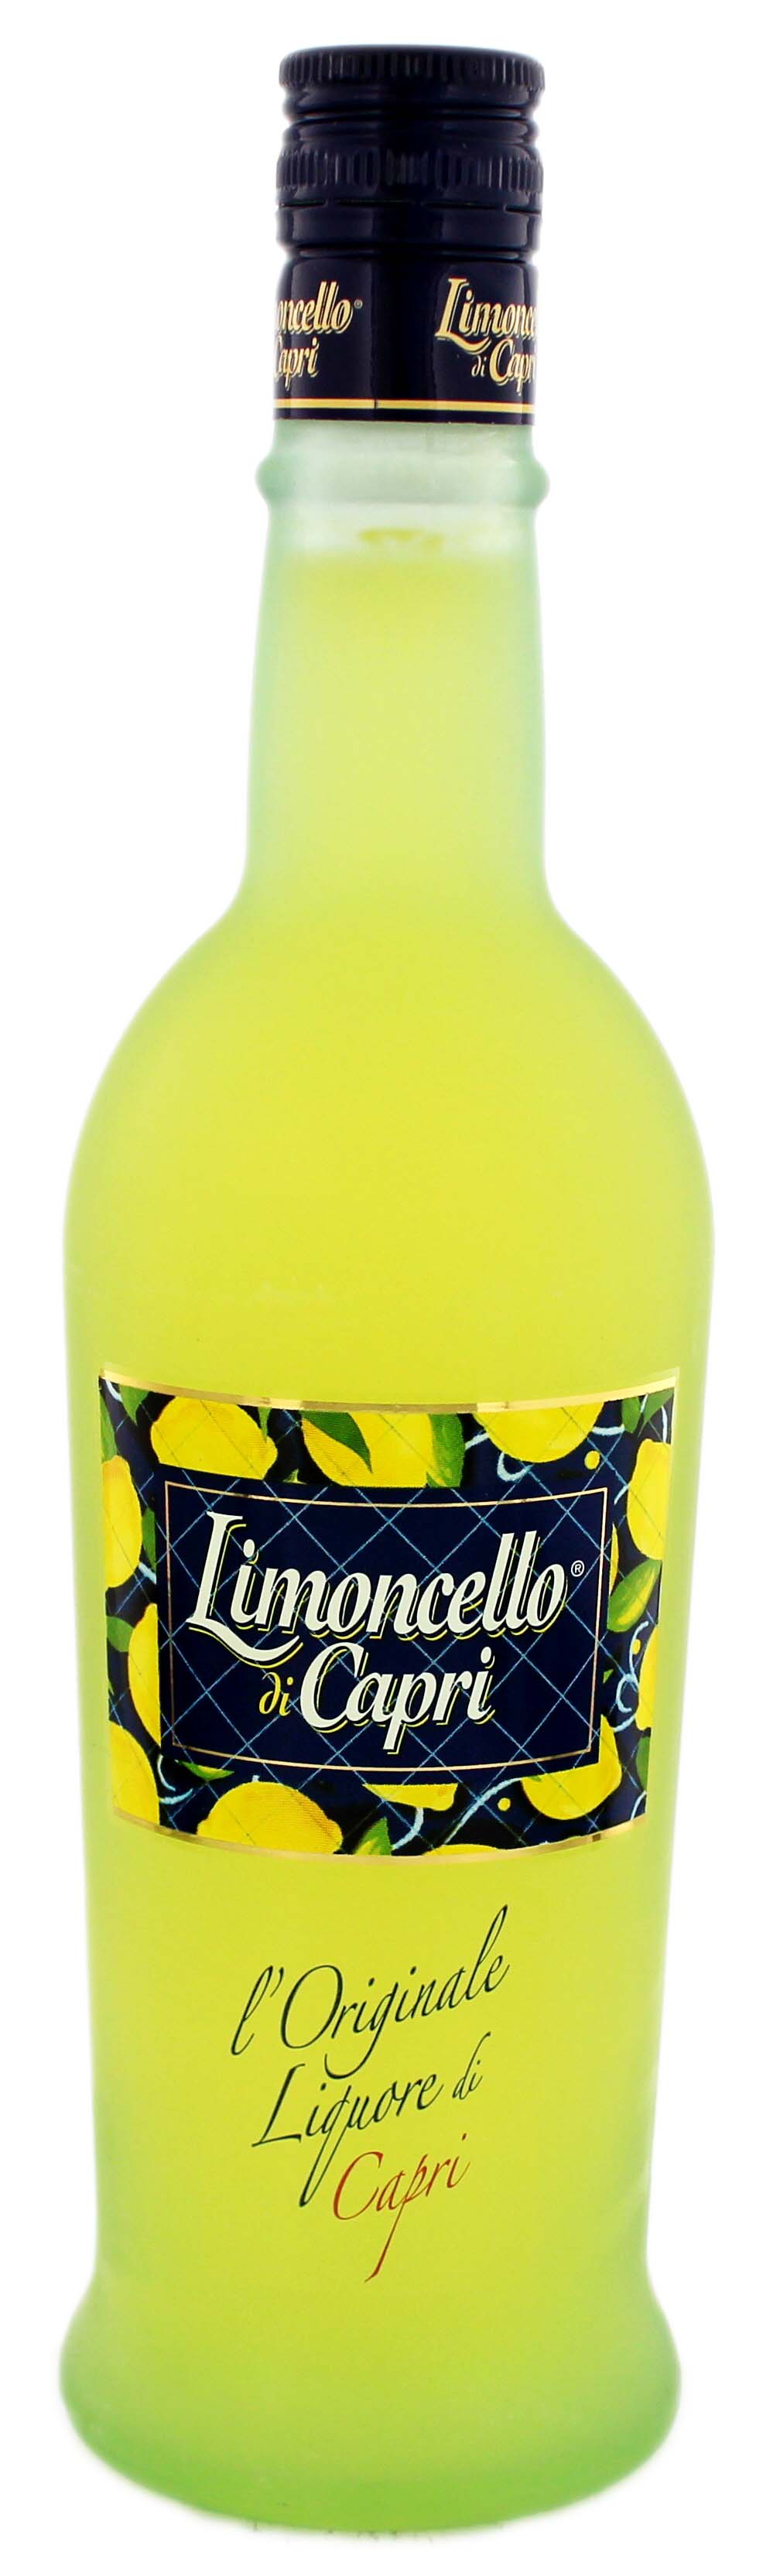 Limoncello di Capri 0,7L jetzt kaufen im Drinkology Online Shop !